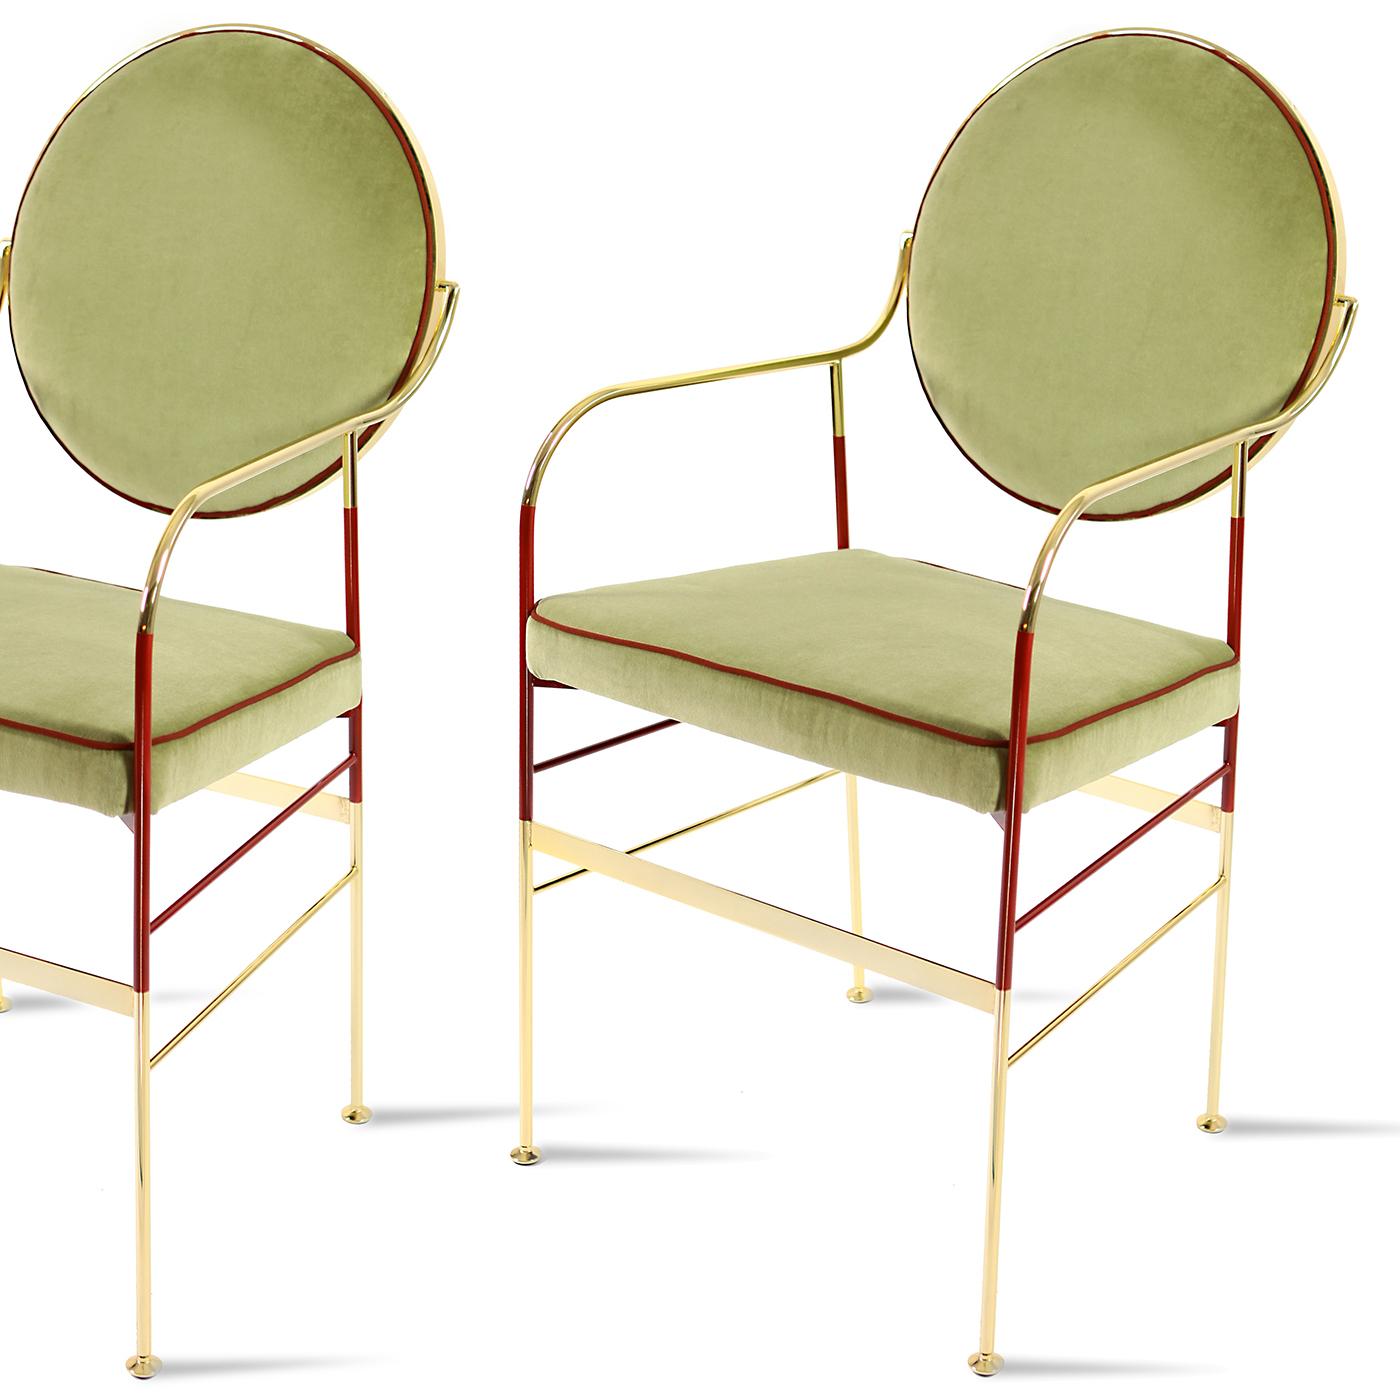 Dieses atemberaubende Design ist eine moderne Interpretation des Louis-Stuhls und zeitlos und anspruchsvoll. Es wurde vollständig handgefertigt mit einem Rahmen aus 24-karätigem, vergoldetem Eisen und galvanisierten Messingfüßen. Diese leichte und